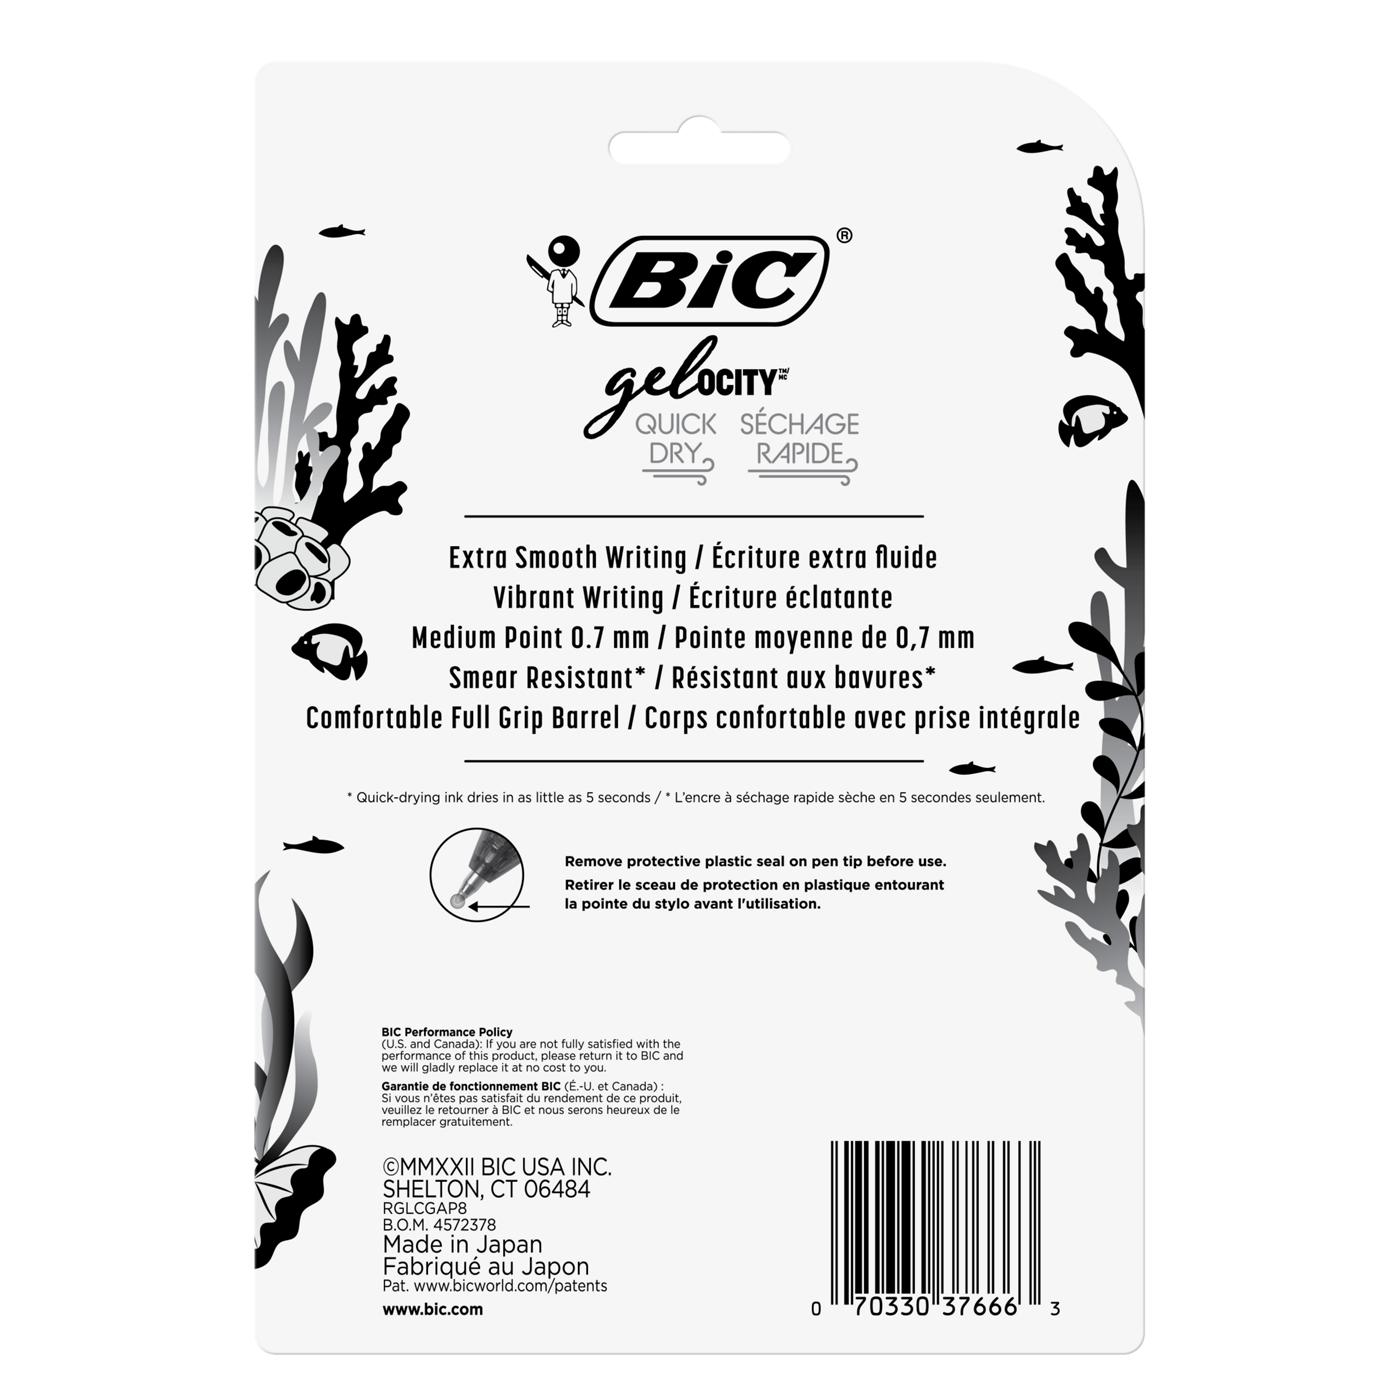 BIC Gel-ocity Quick Dry 0.7mm Retractable Gel Pens - Assorted Ocean Theme Ink; image 2 of 2